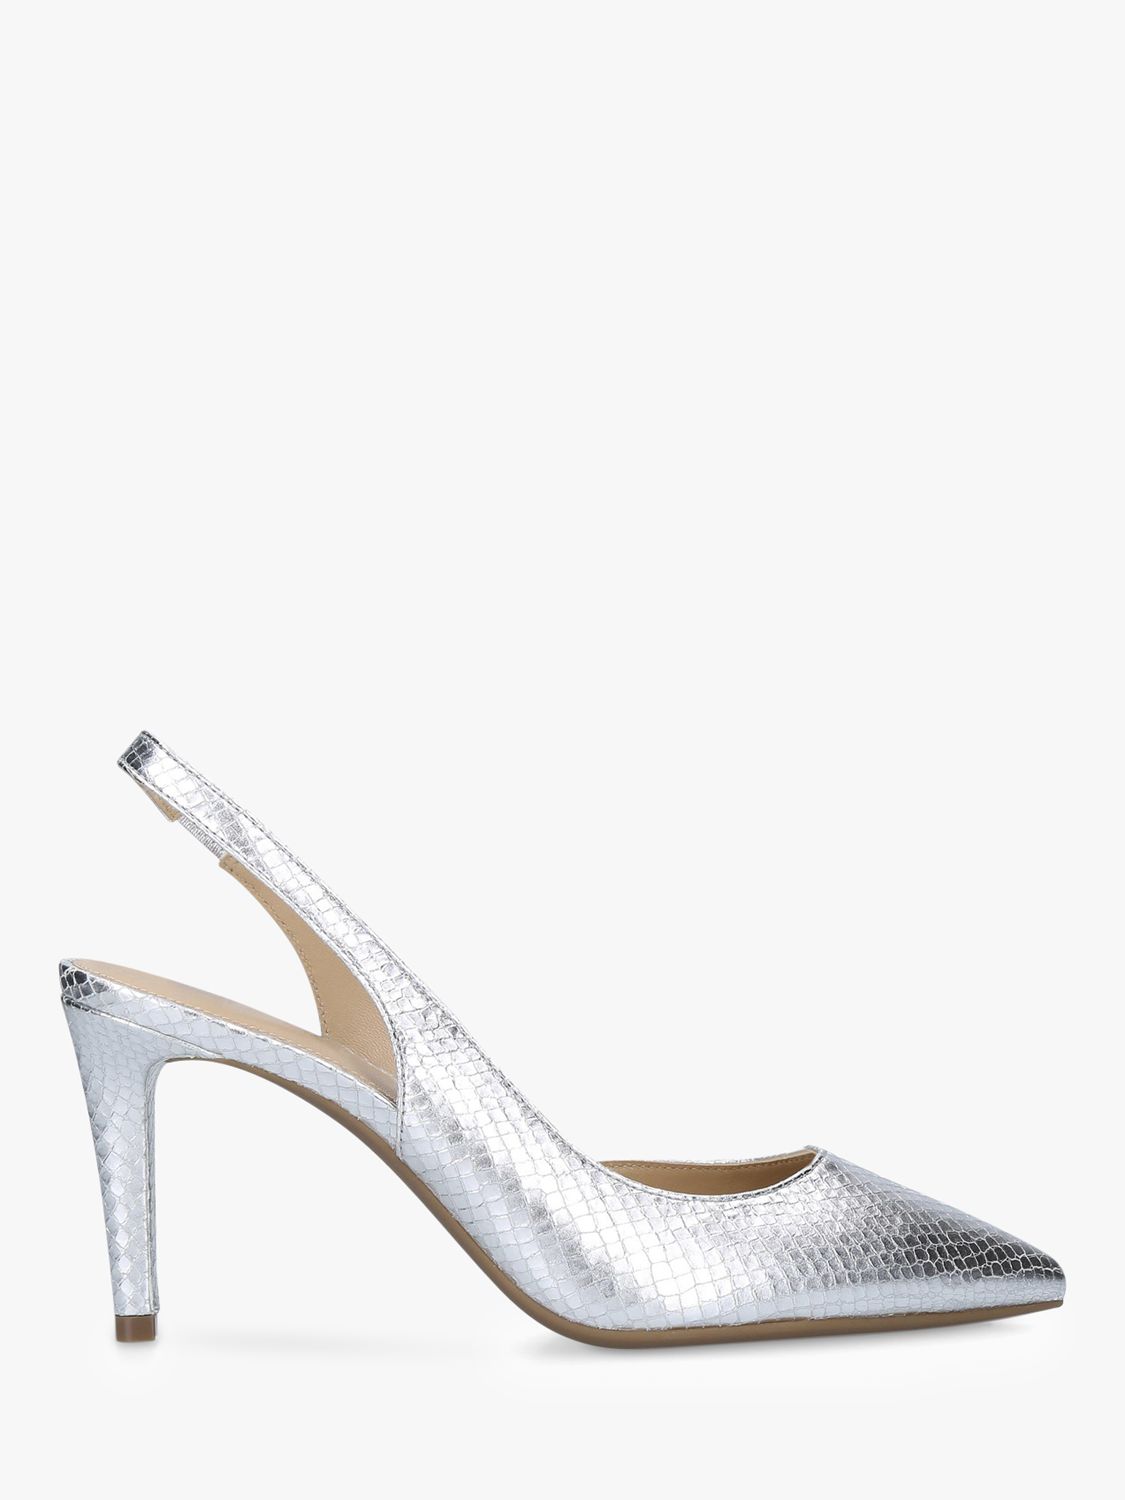 MICHAEL Michael Kors Lucille Flex Metallic Slingback Court Shoes, Silver